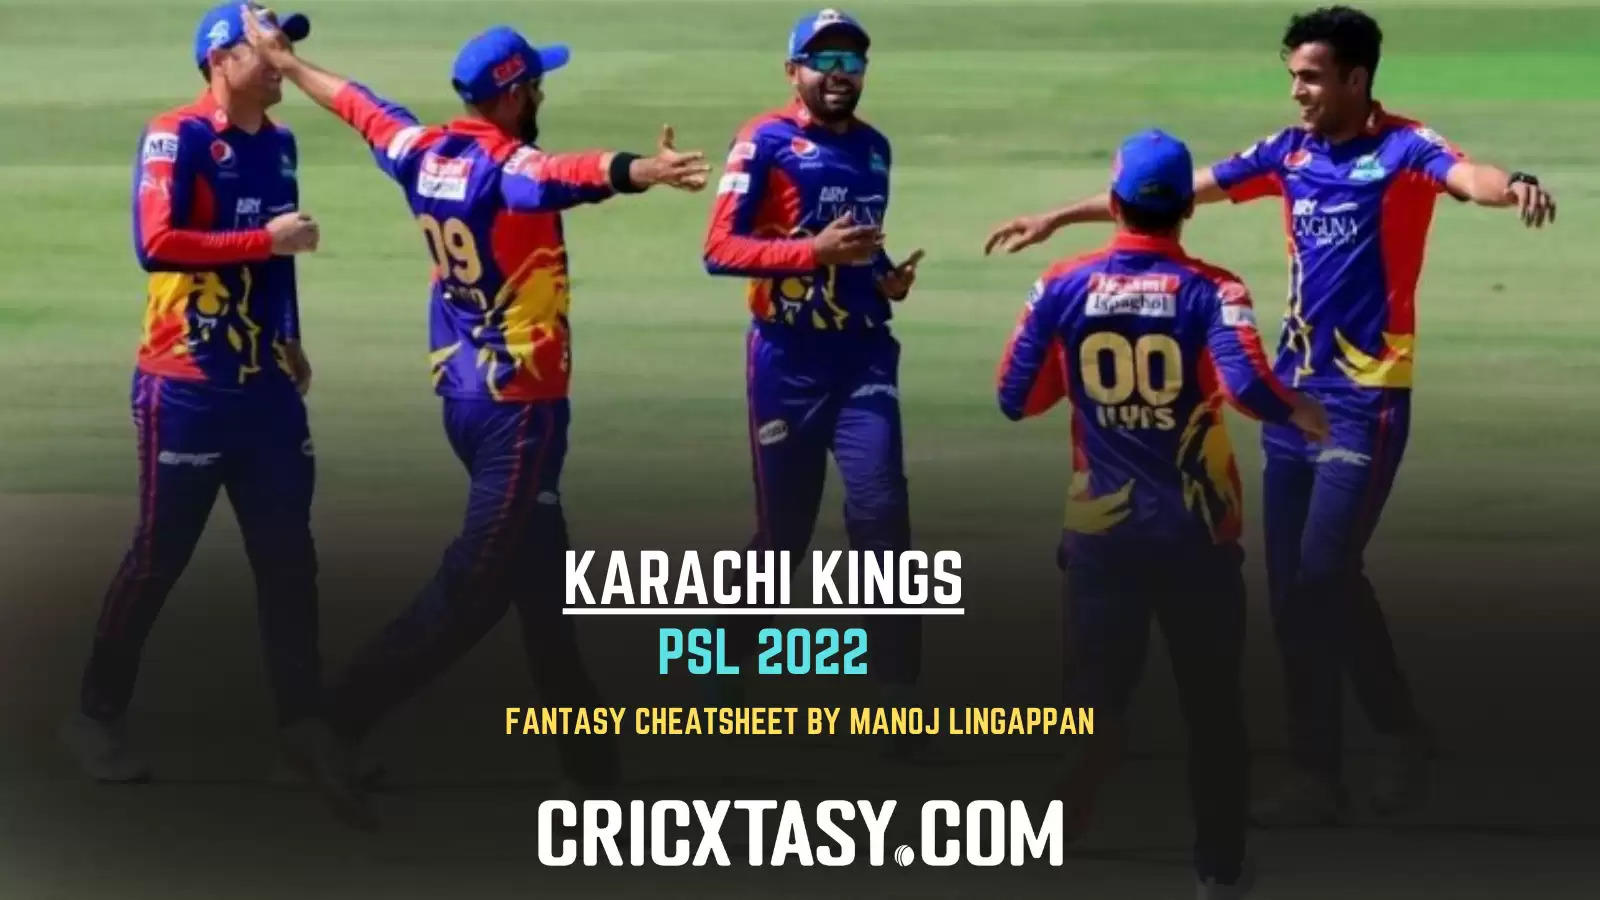 Pakistan Super League 2022: Karachi Kings Fantasy CheatSheet for PSL 2022